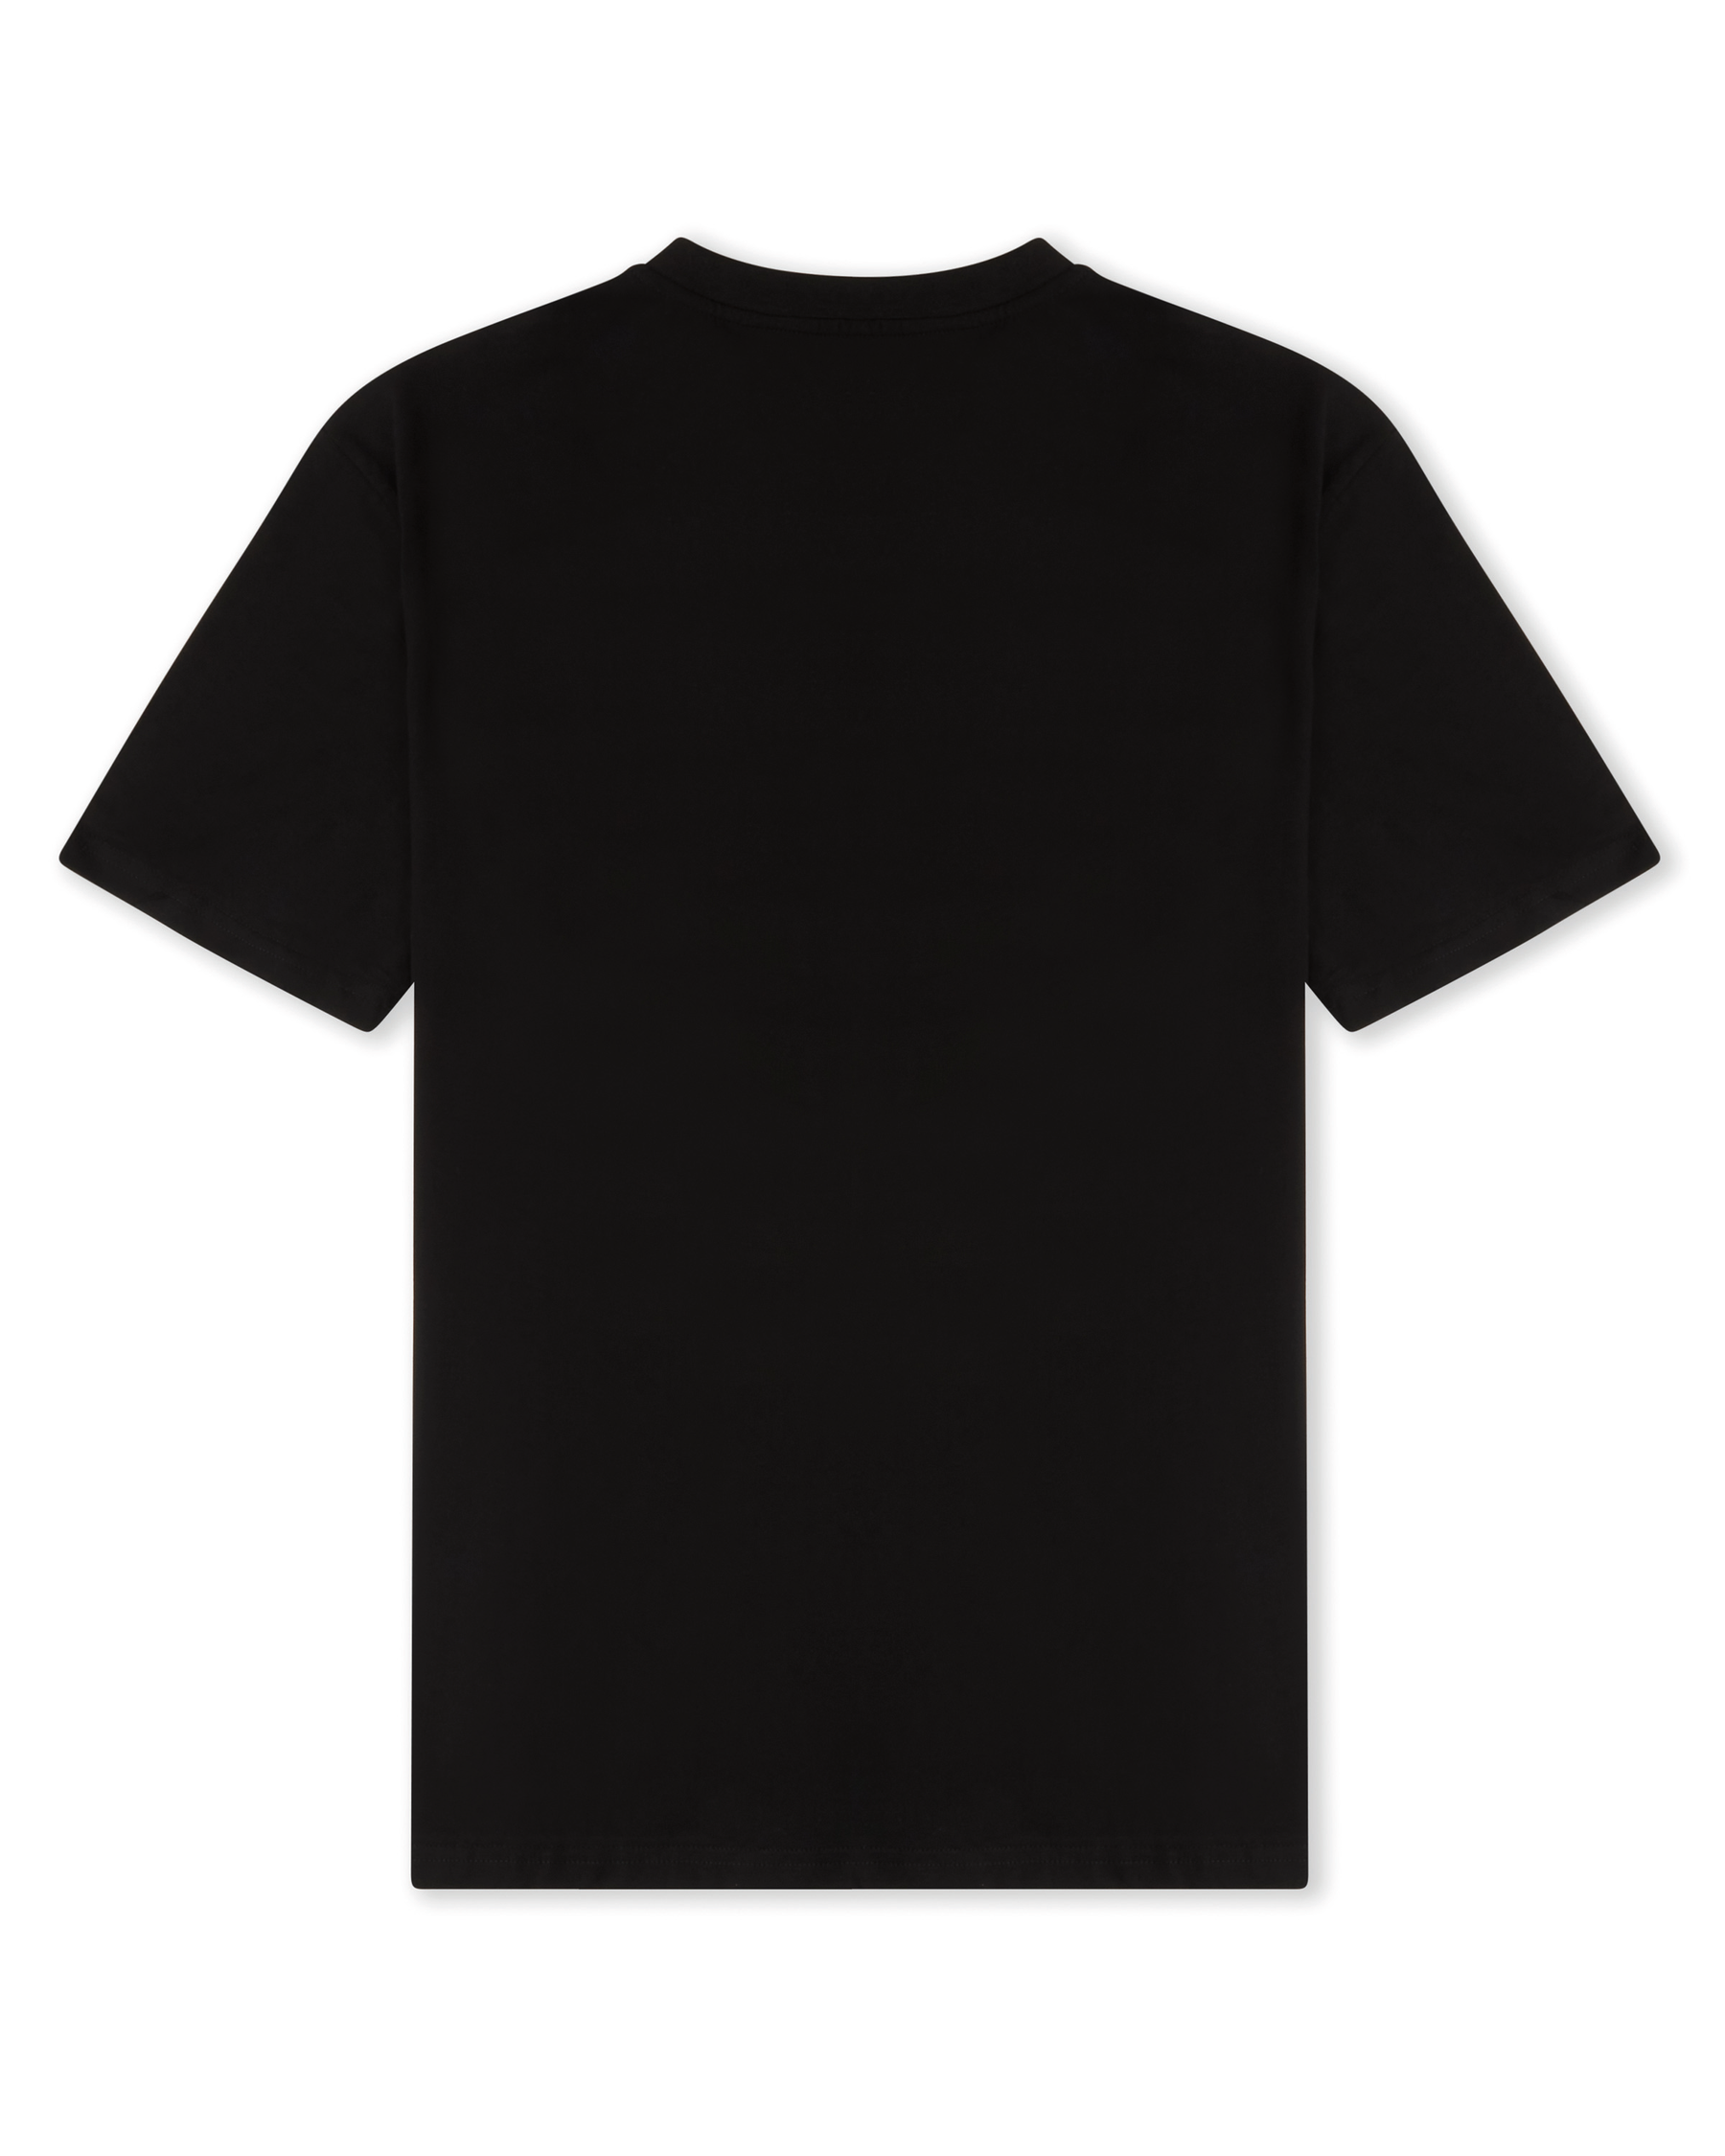 OG Core 3 Pack T-shirts - Black/White